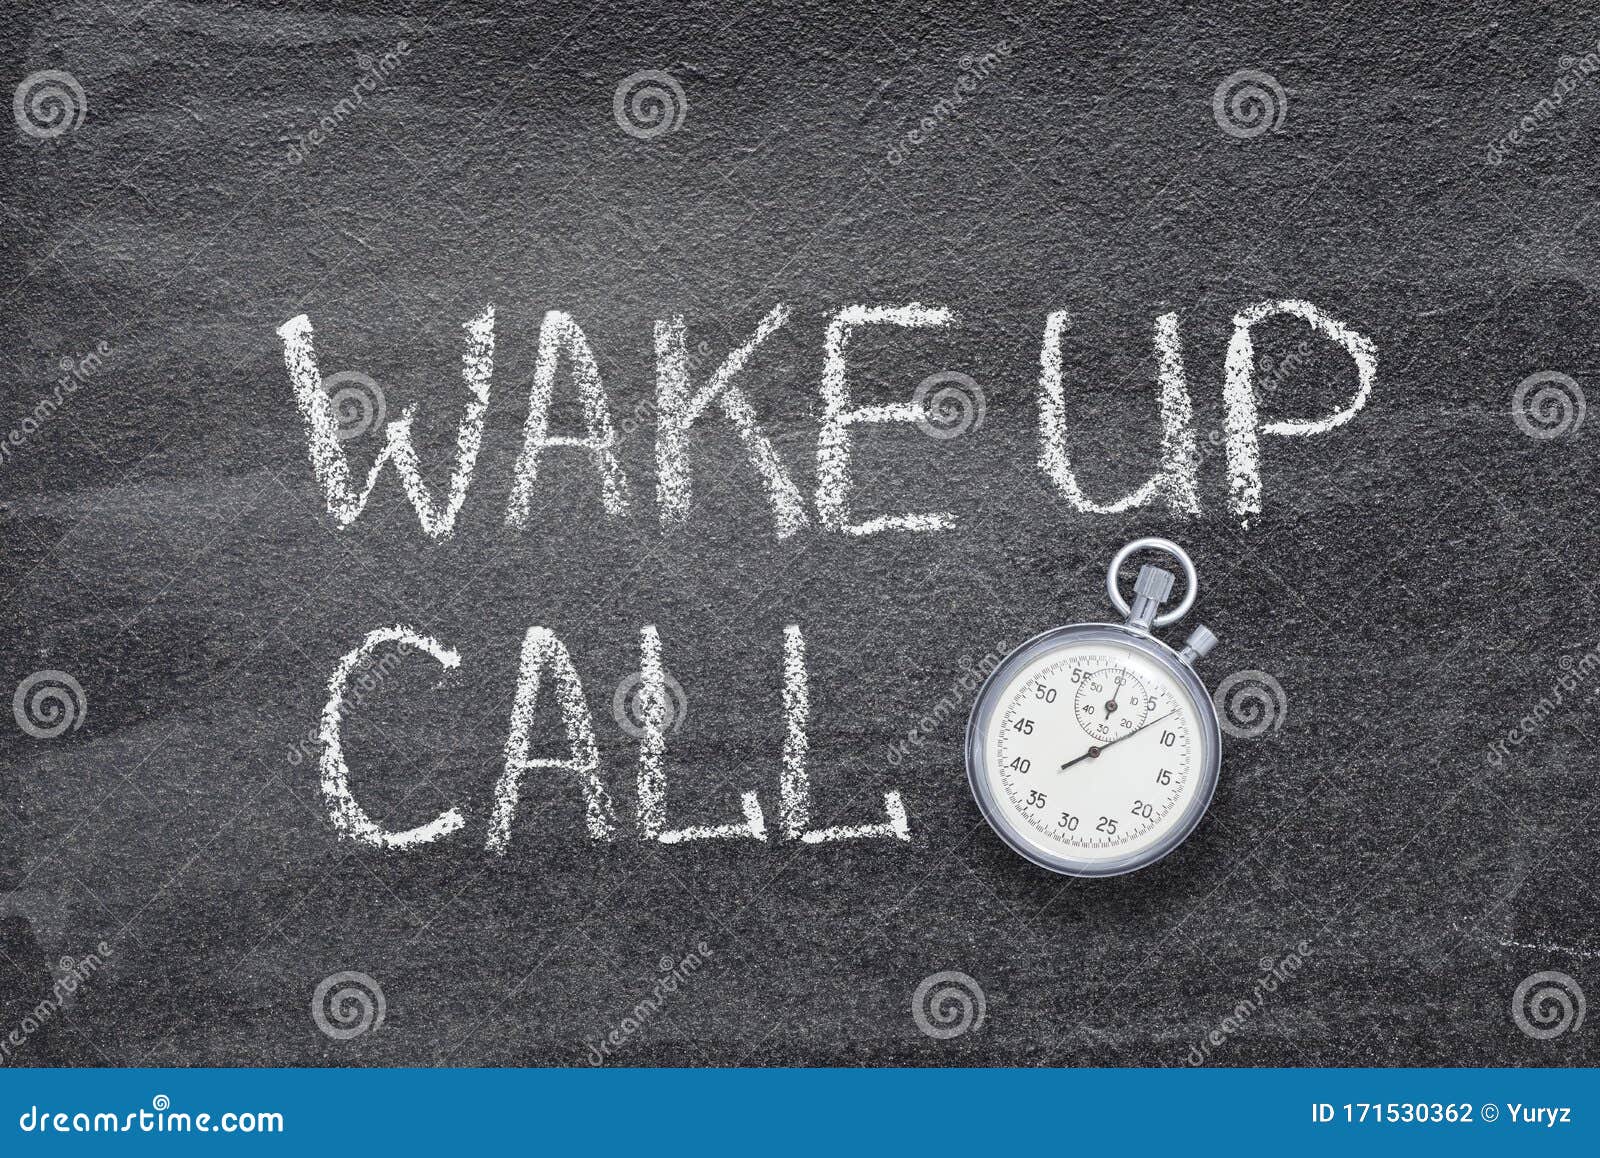 Что значит watch call на часах. Watch Call перевод. Wake up Call. Wake up Call игра. Watch переводчик.